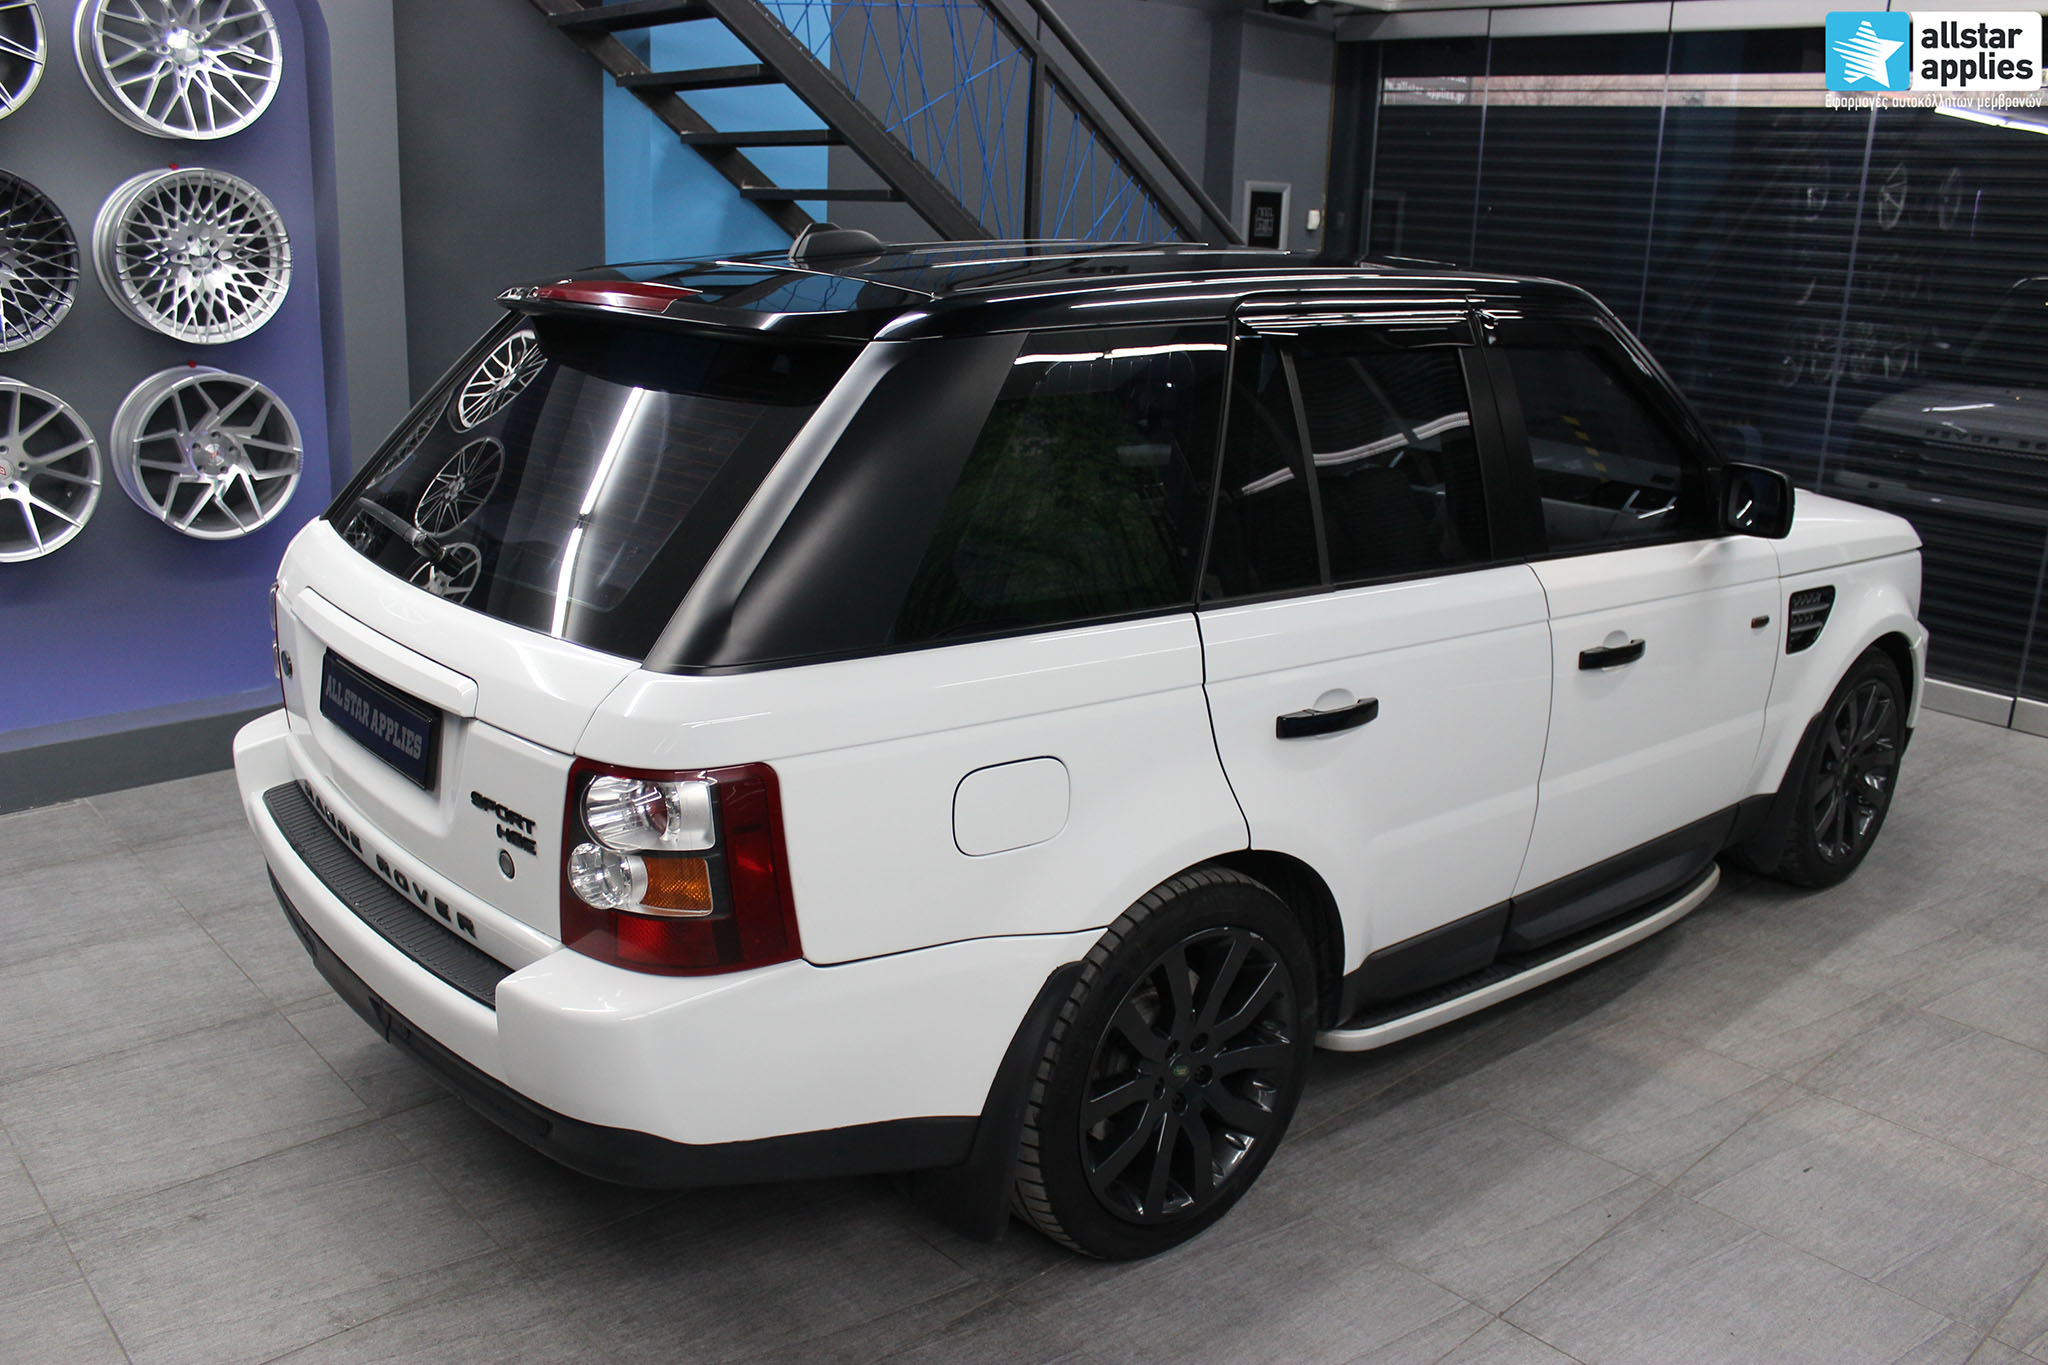 Range Rover – White Metallic (5)